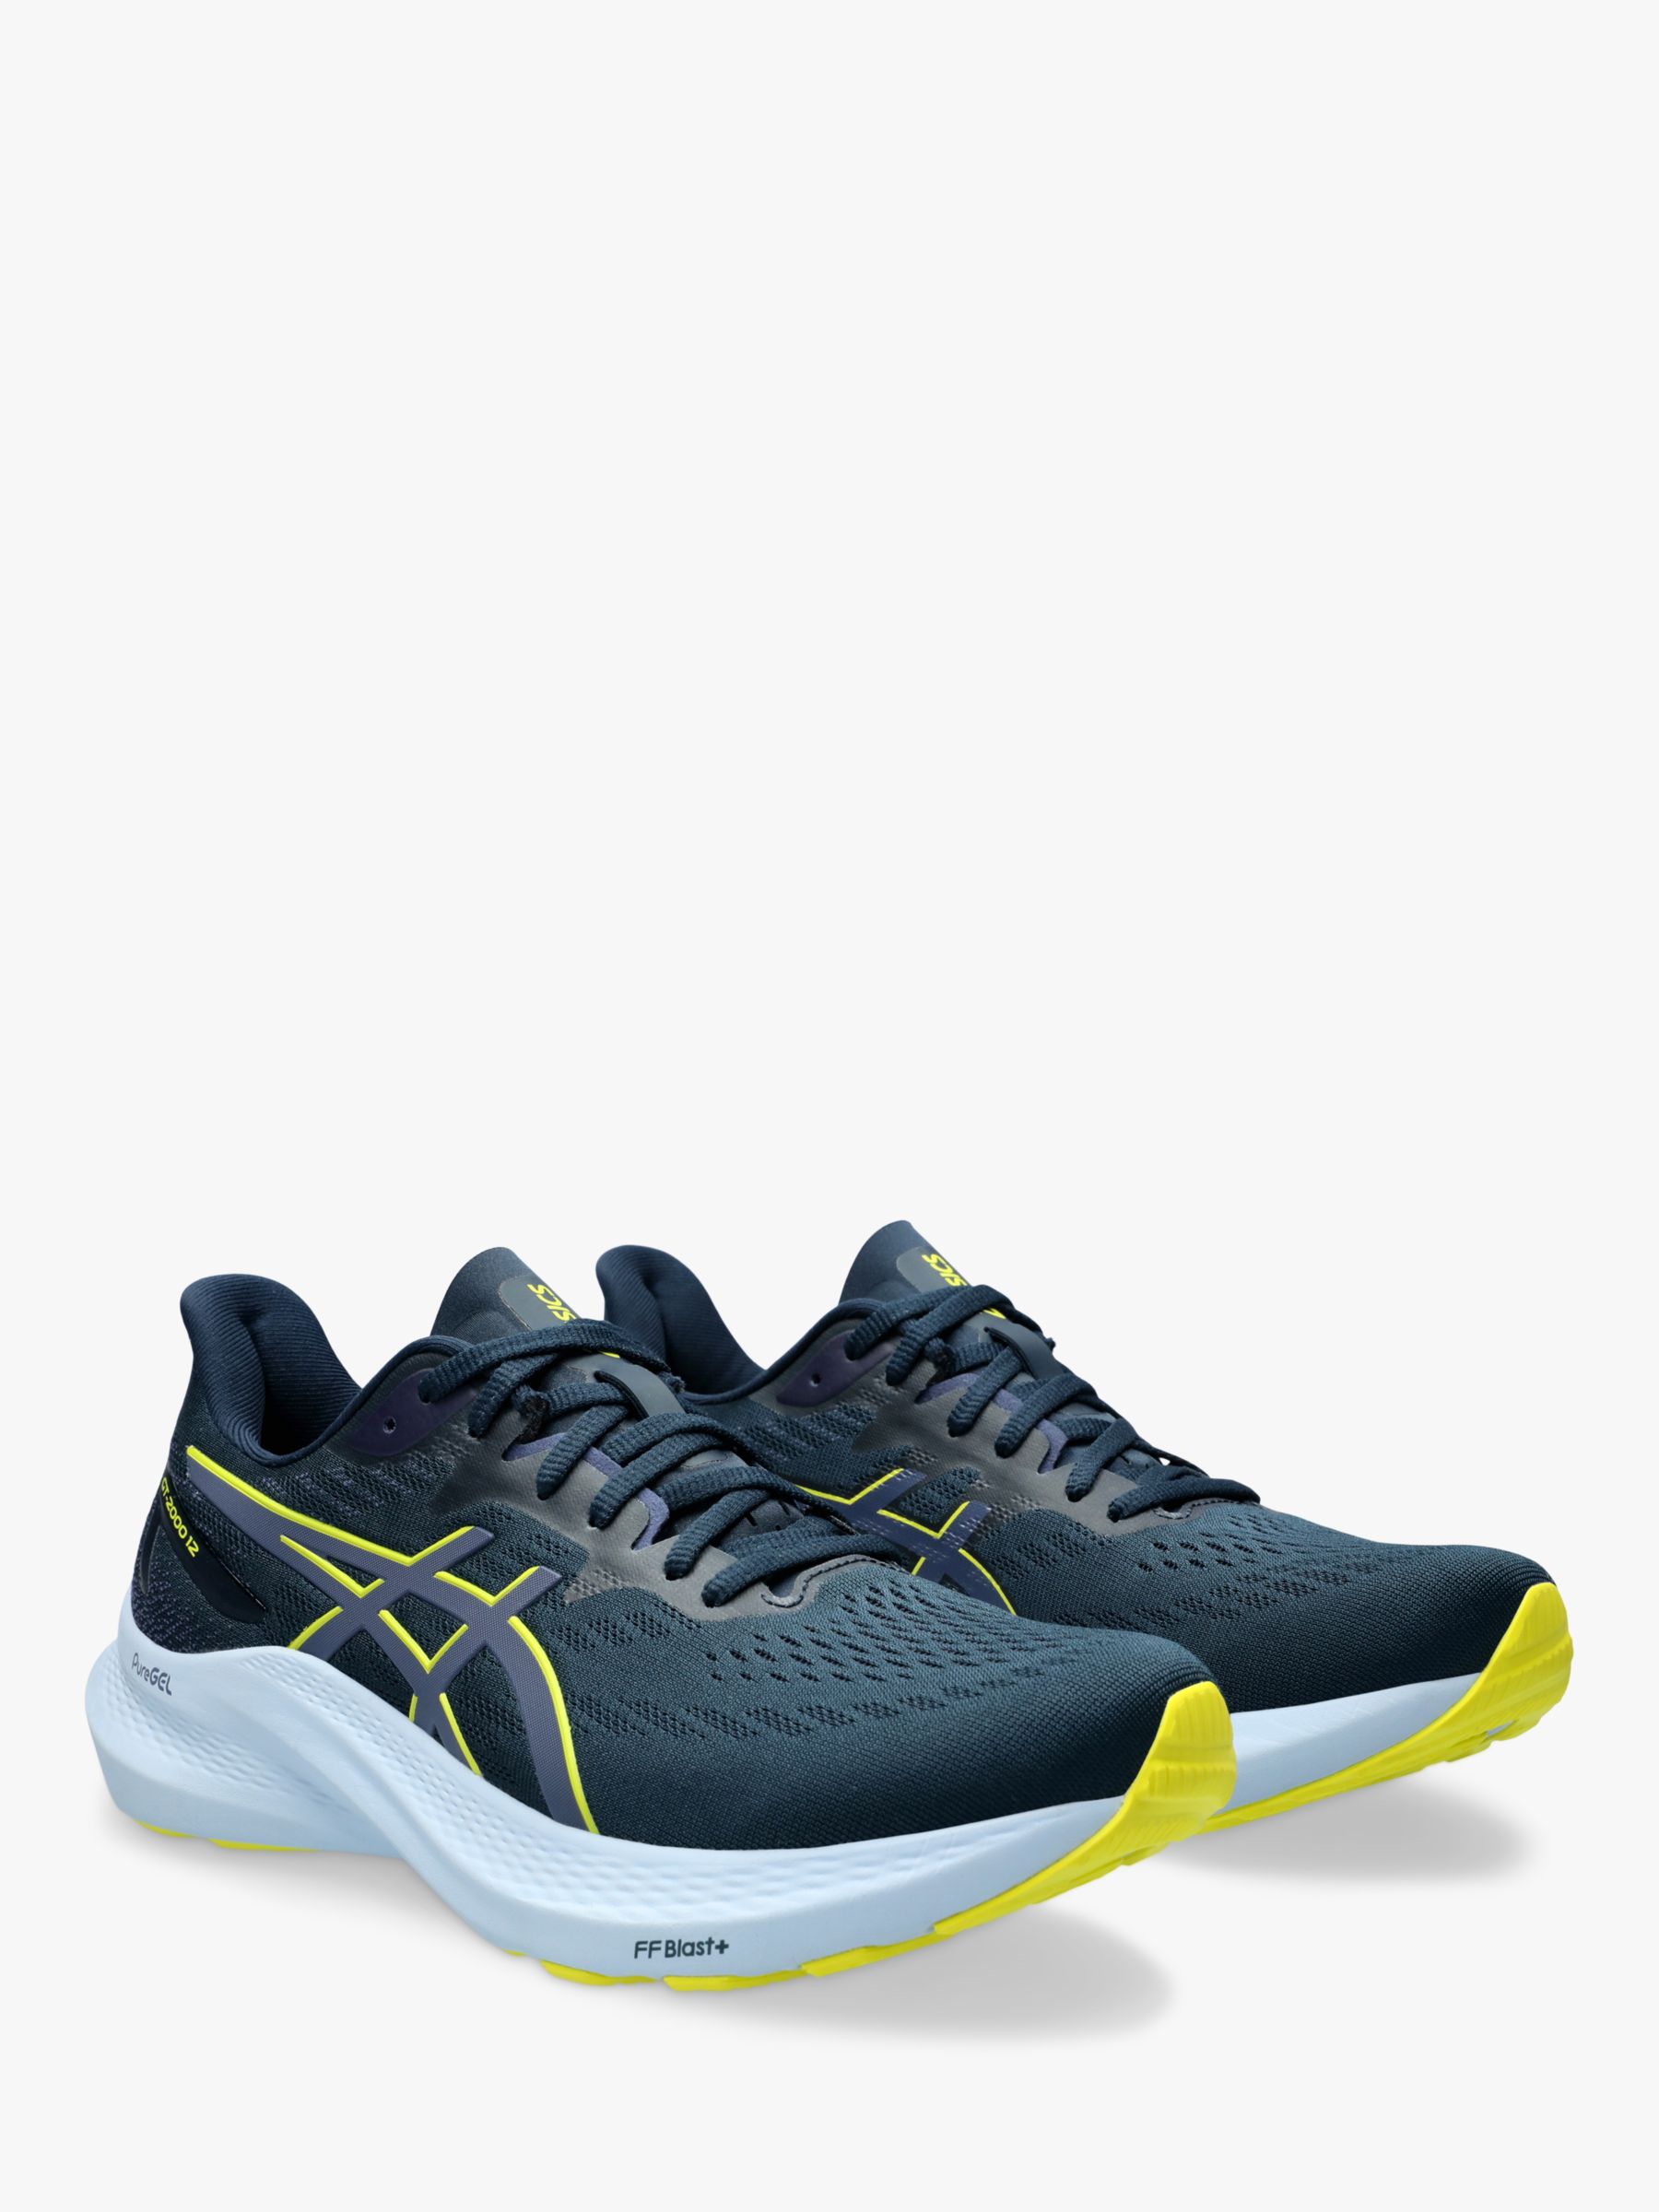 ASICS GT-2000 12 Men's Running Shoes, Blue/Yellow, 7